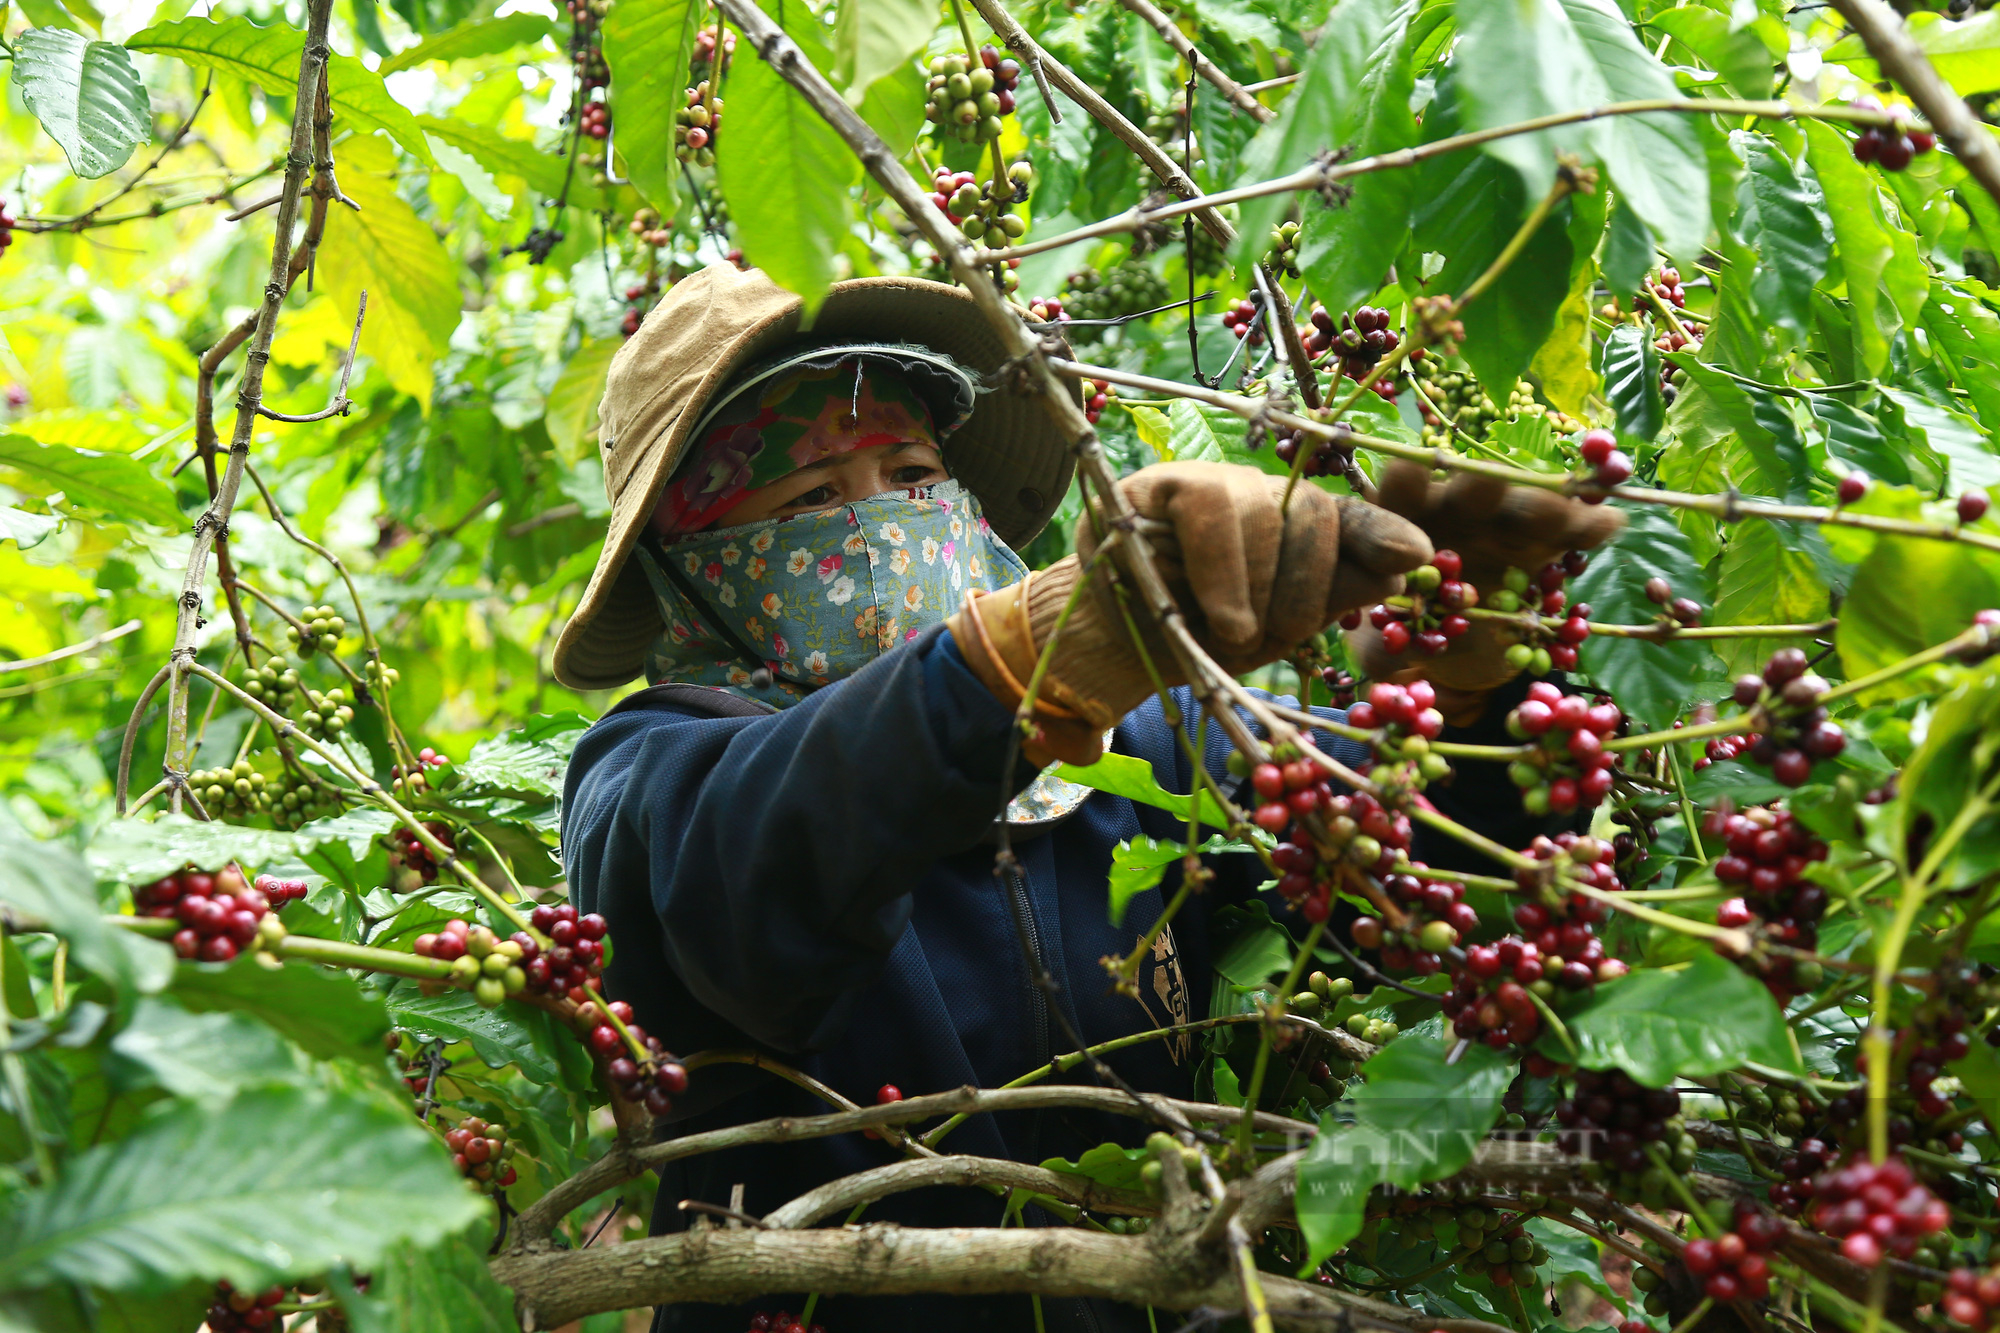 Giá cà phê Đắk Lắk hôm nay tăng nhẹ, đất trồng cà phê suy thoái chất lượng - Ảnh 3.